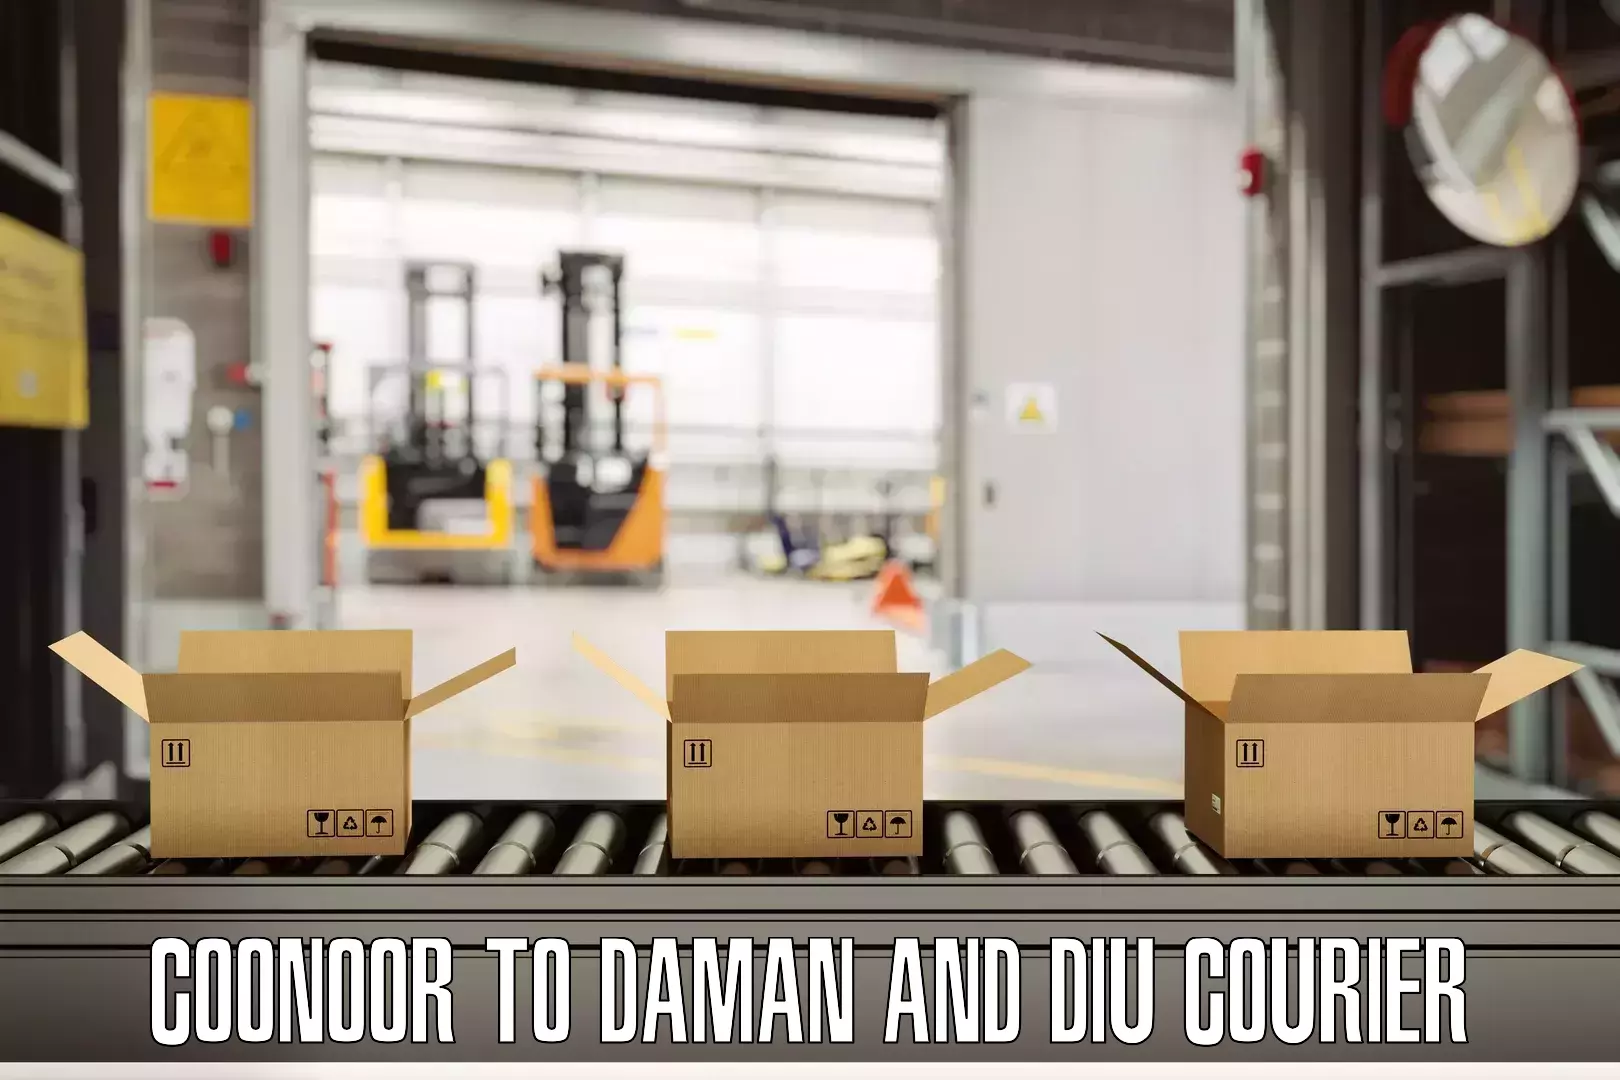 Door-to-door baggage service Coonoor to Daman and Diu